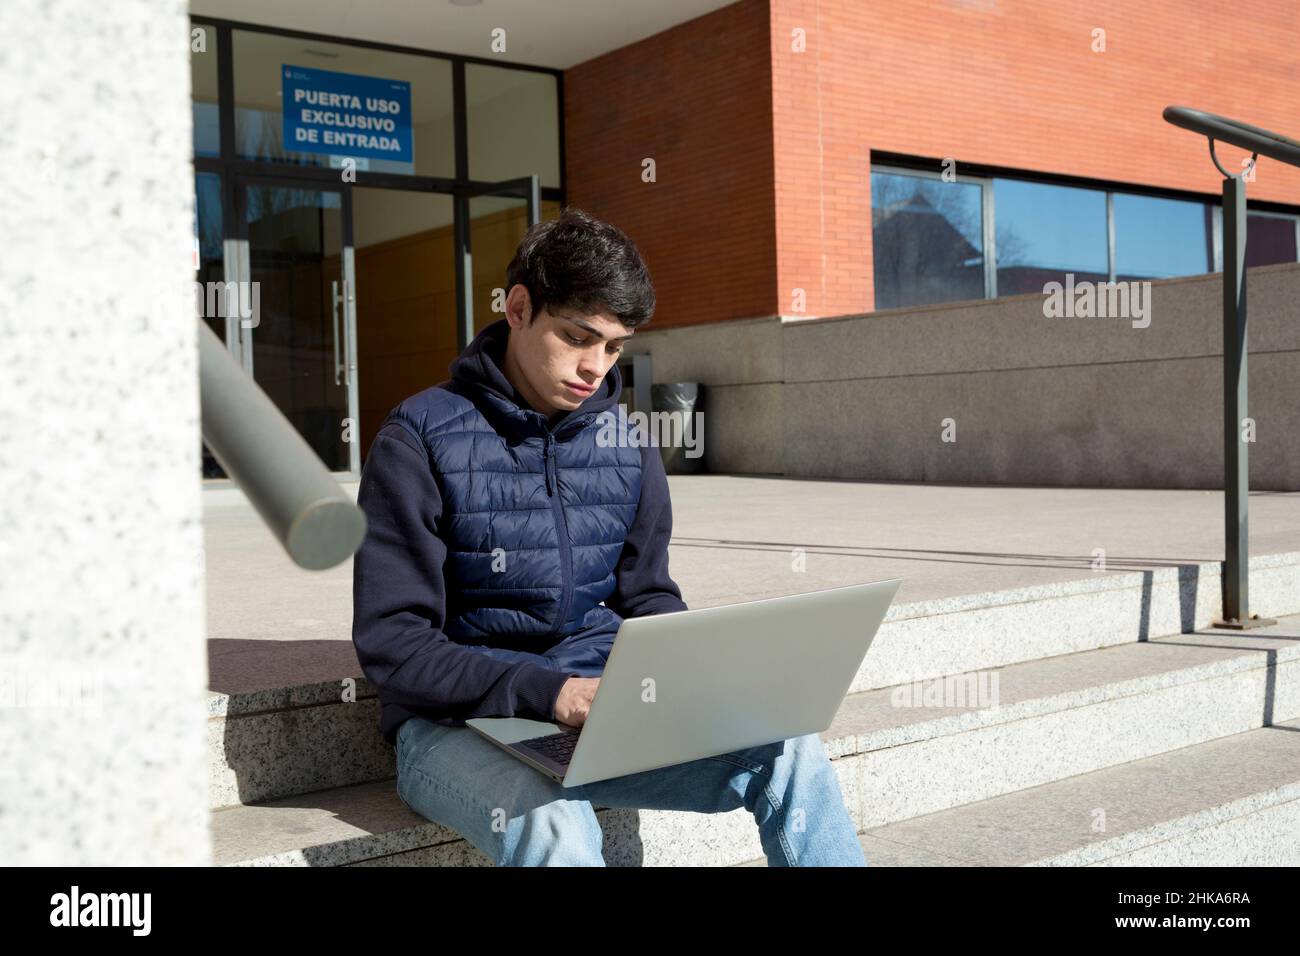 étudiant de l'université, garçon utilisant un ordinateur portable assis sur les escaliers de l'université Banque D'Images